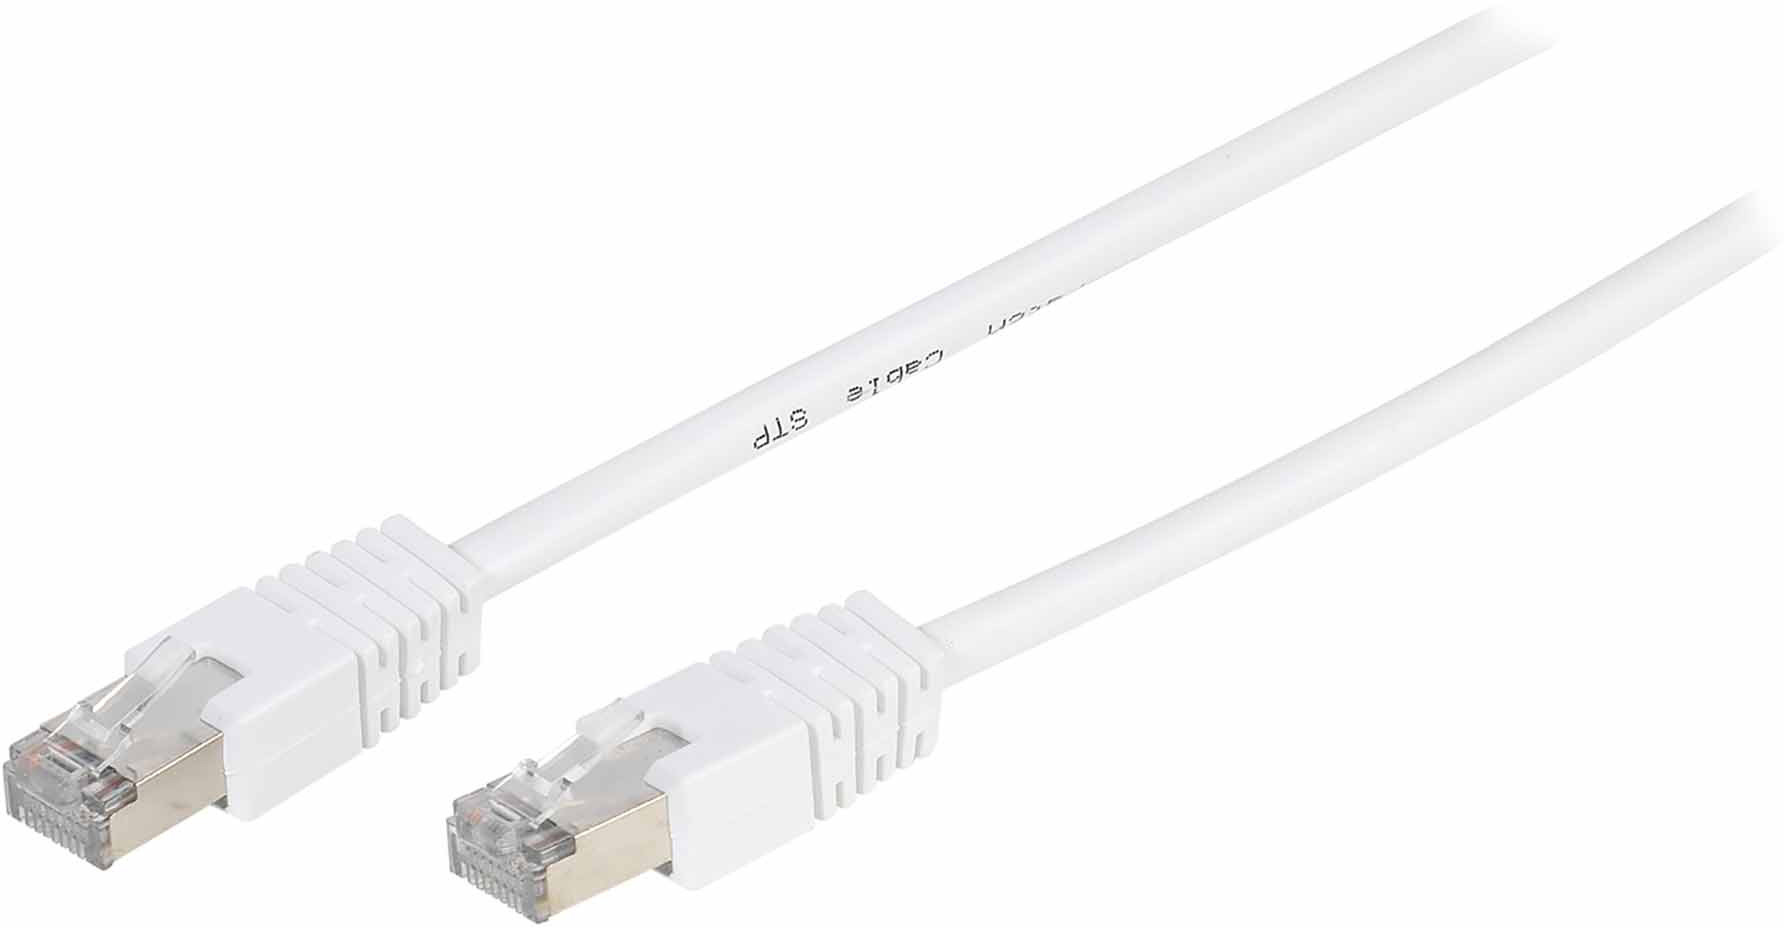 Vivanco kabelis CAT 5e Ethernet kabelis 5m (45333) 4008928453331 45333 (4008928453331) kabelis, vads